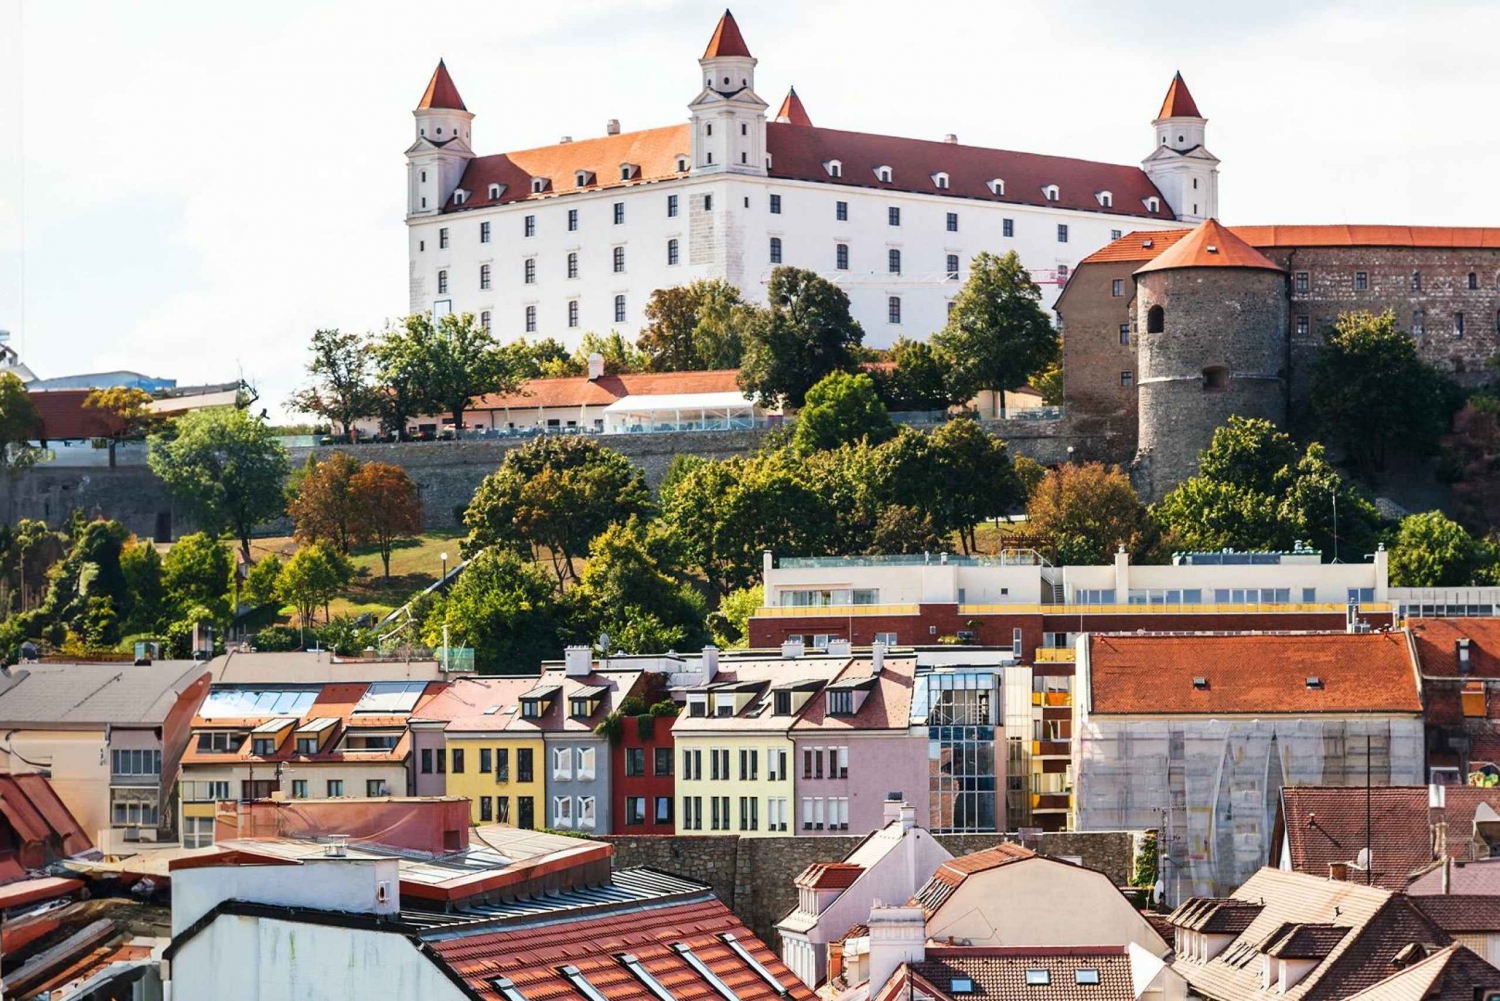 Bratislava en una excursión de un día en coche desde Viena